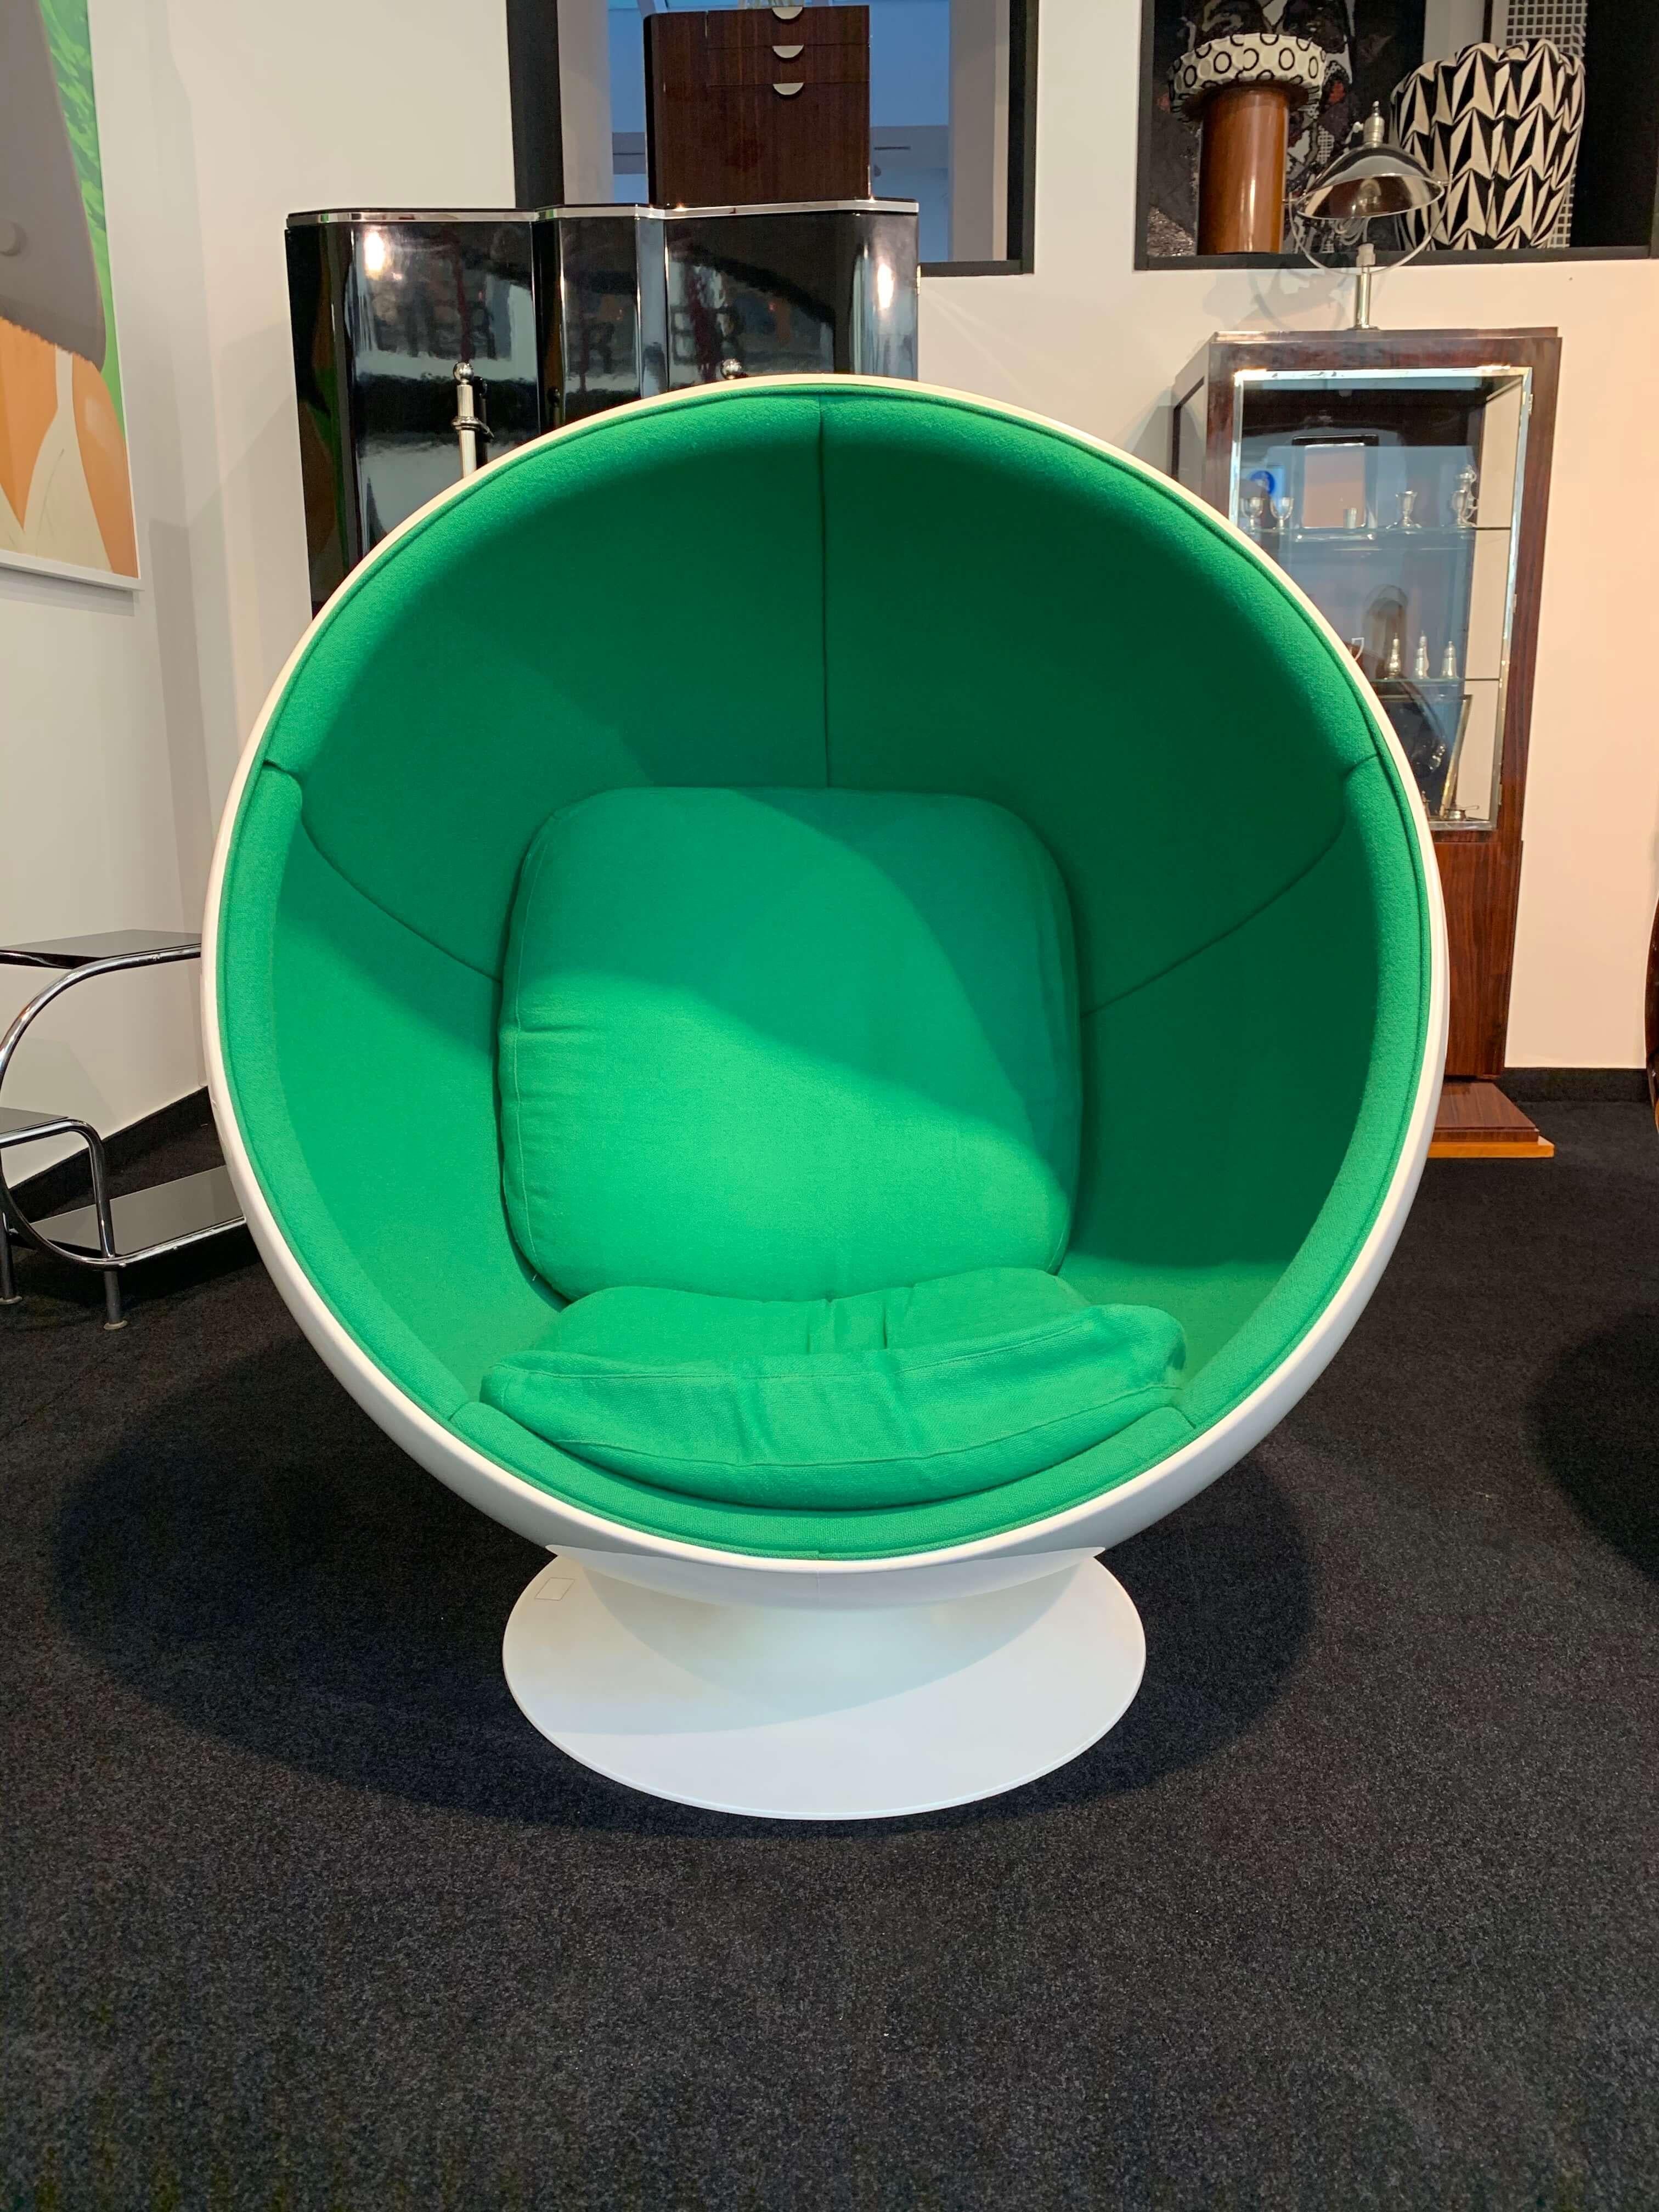 Space Age Ball Chair by Adelta:: Eero Aarino:: Grün und Weiß:: Finnland (Finnisch)